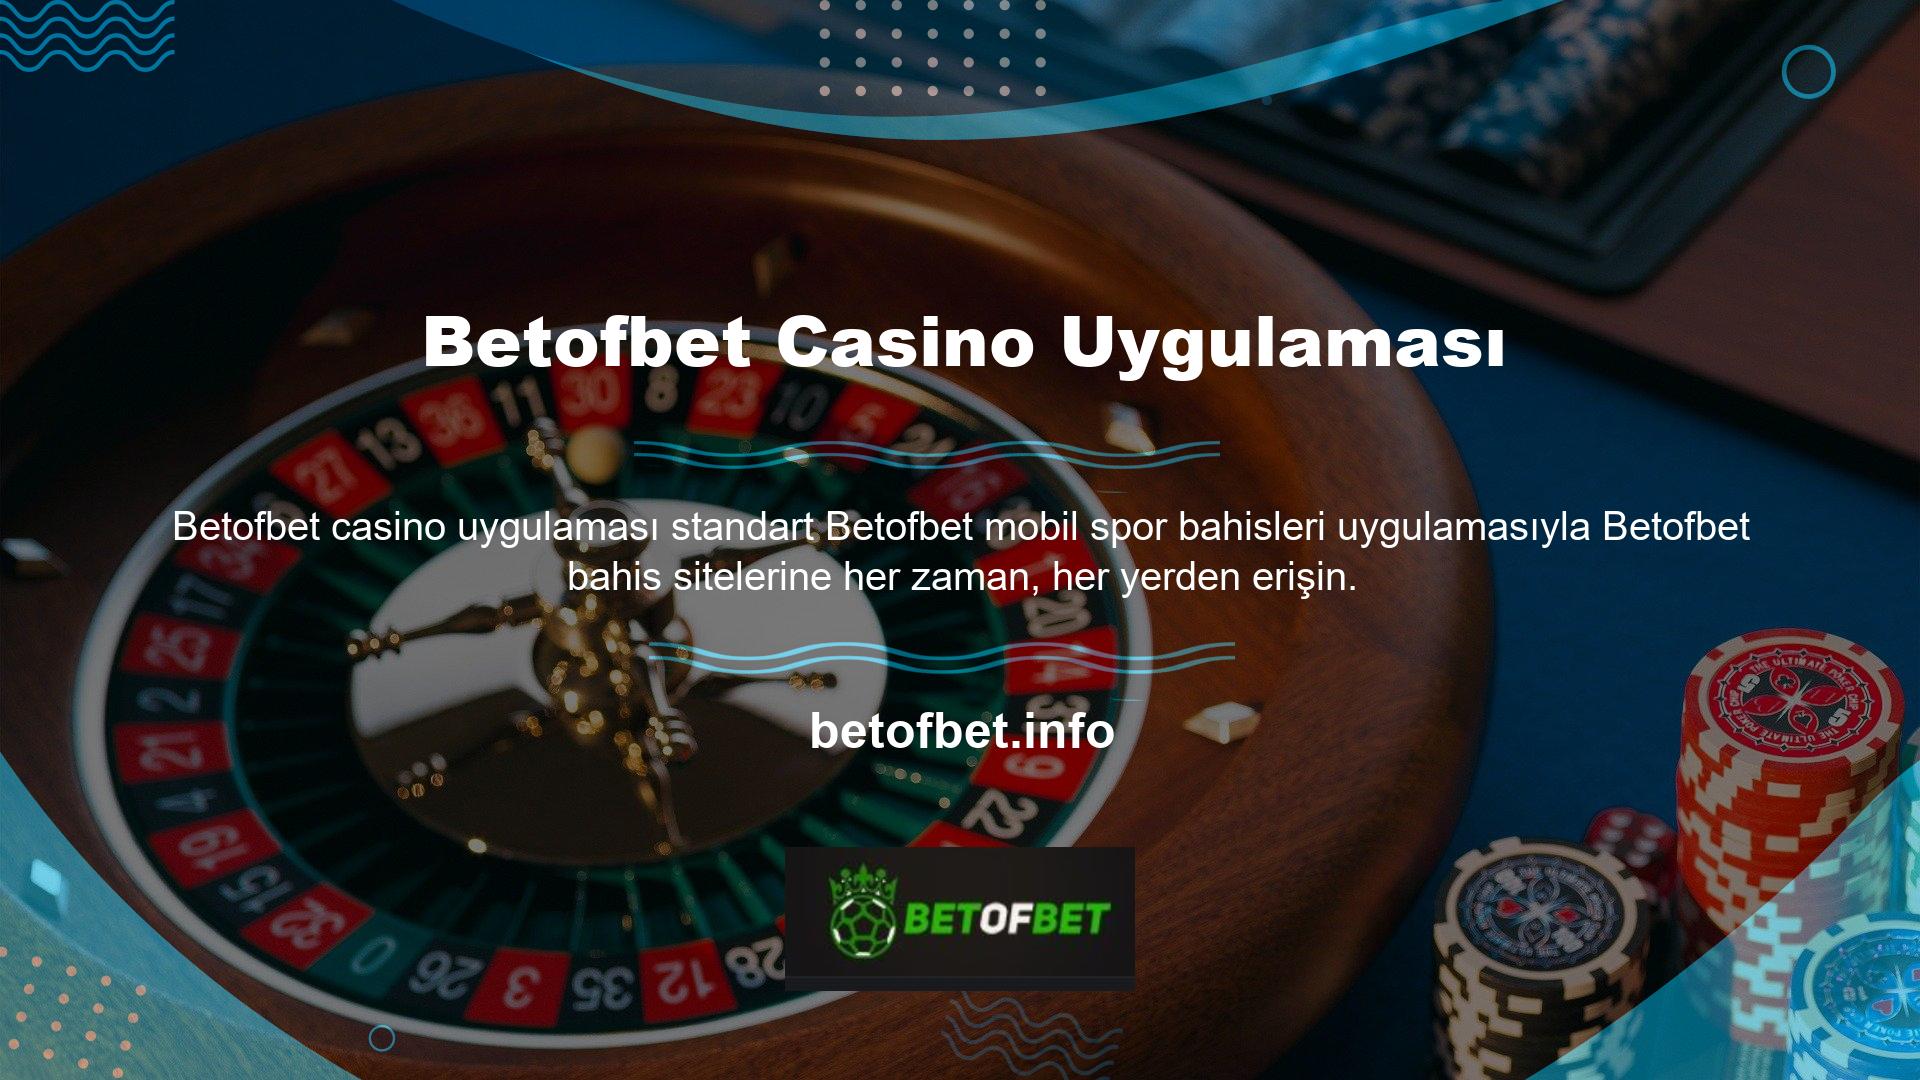 Alternatif olarak, “casino endüstrisindeki en iyi mobil casino platformu” olduğunu bahis eden Betofbet Casino’nun özel uygulamasını indirebilirsiniz